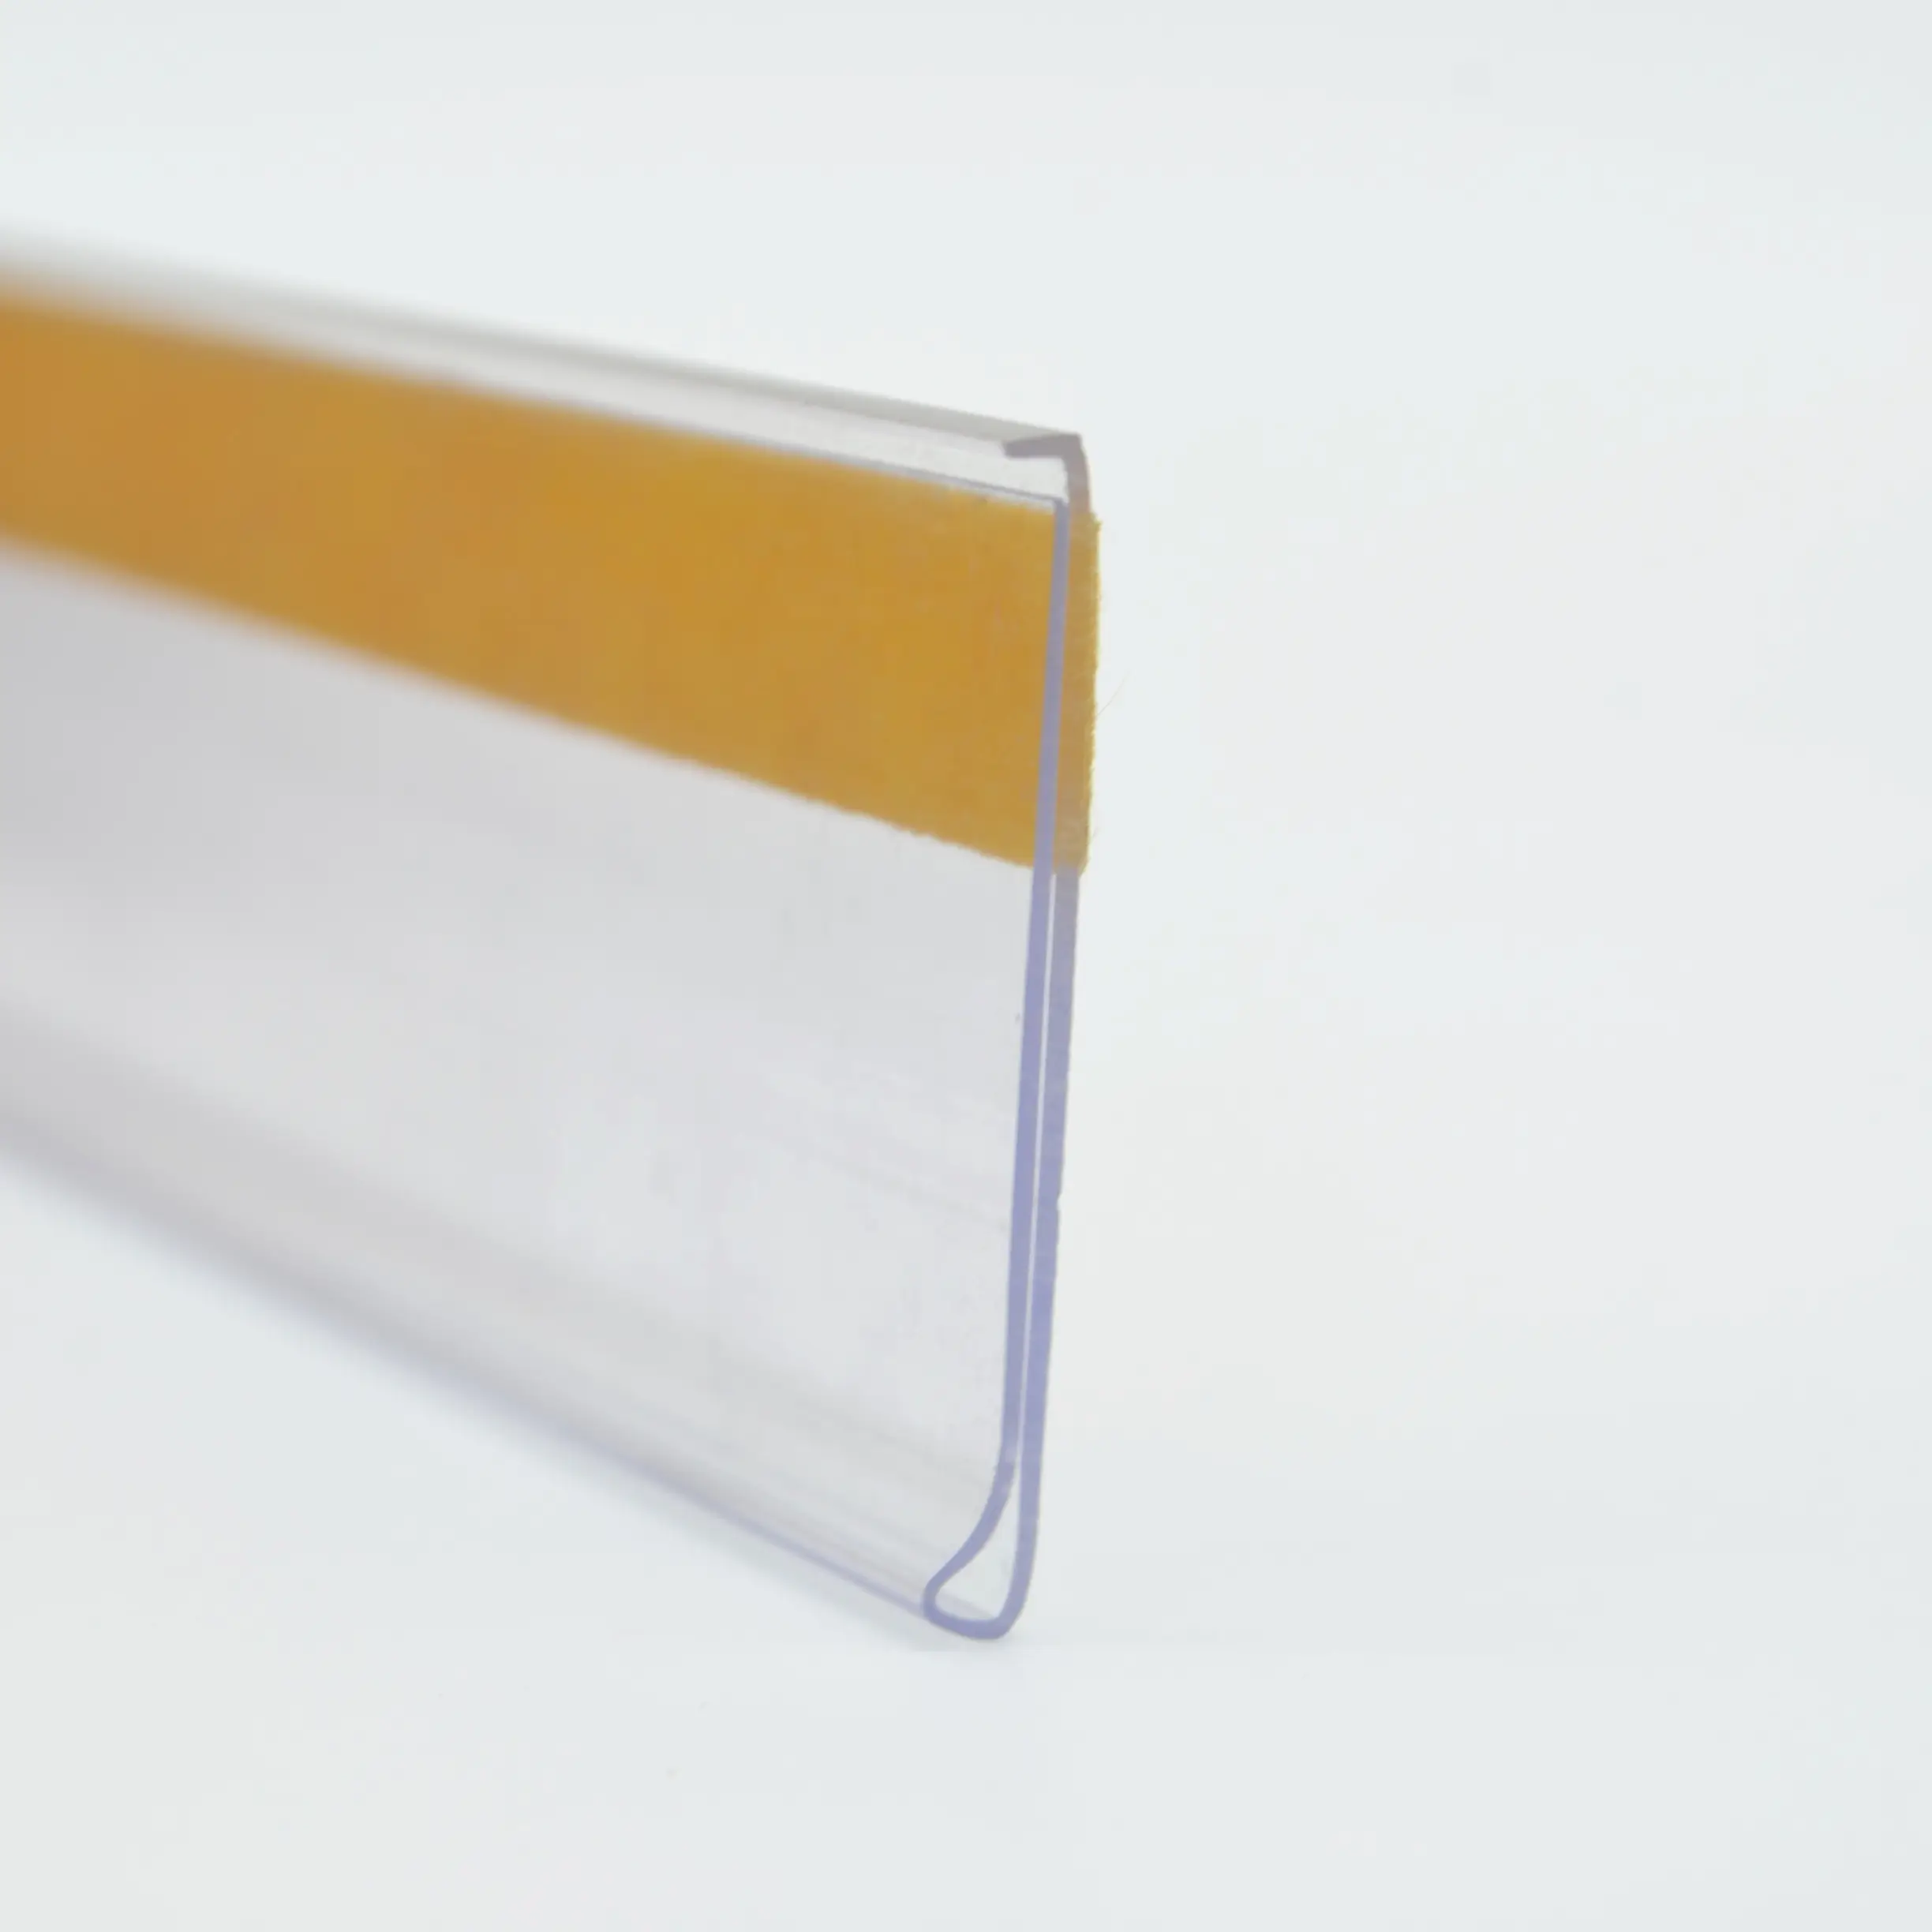 Tira de suporte adesiva para etiqueta de pvc, para estante de superfície